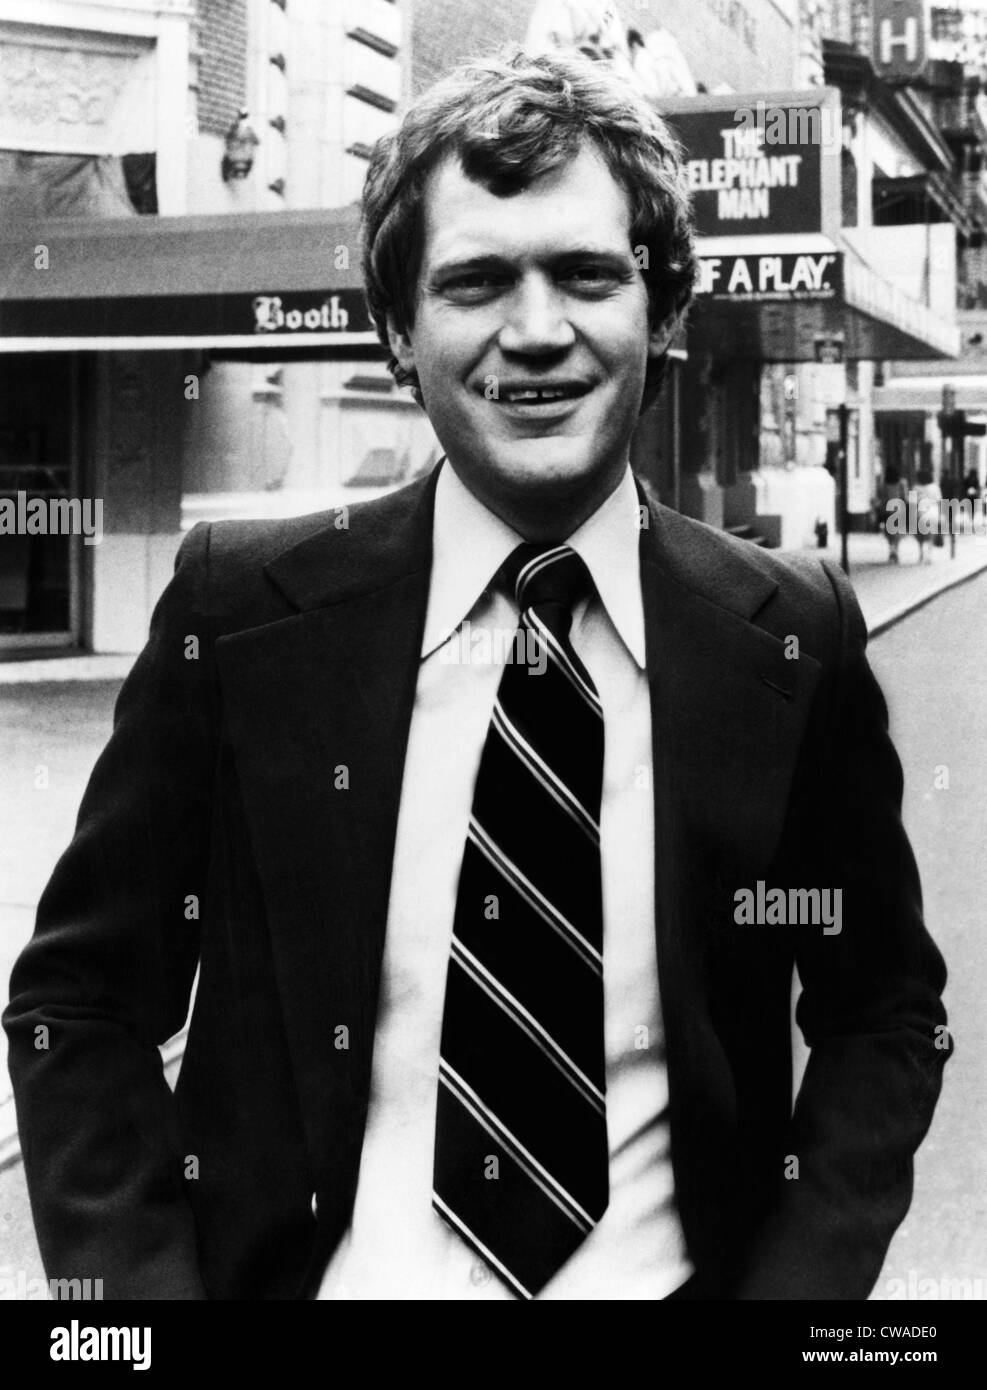 David Letterman, US-amerikanischer Talkshow-Host, circa 1980. Höflichkeit: CSU Archive/Everett Collection Stockfoto